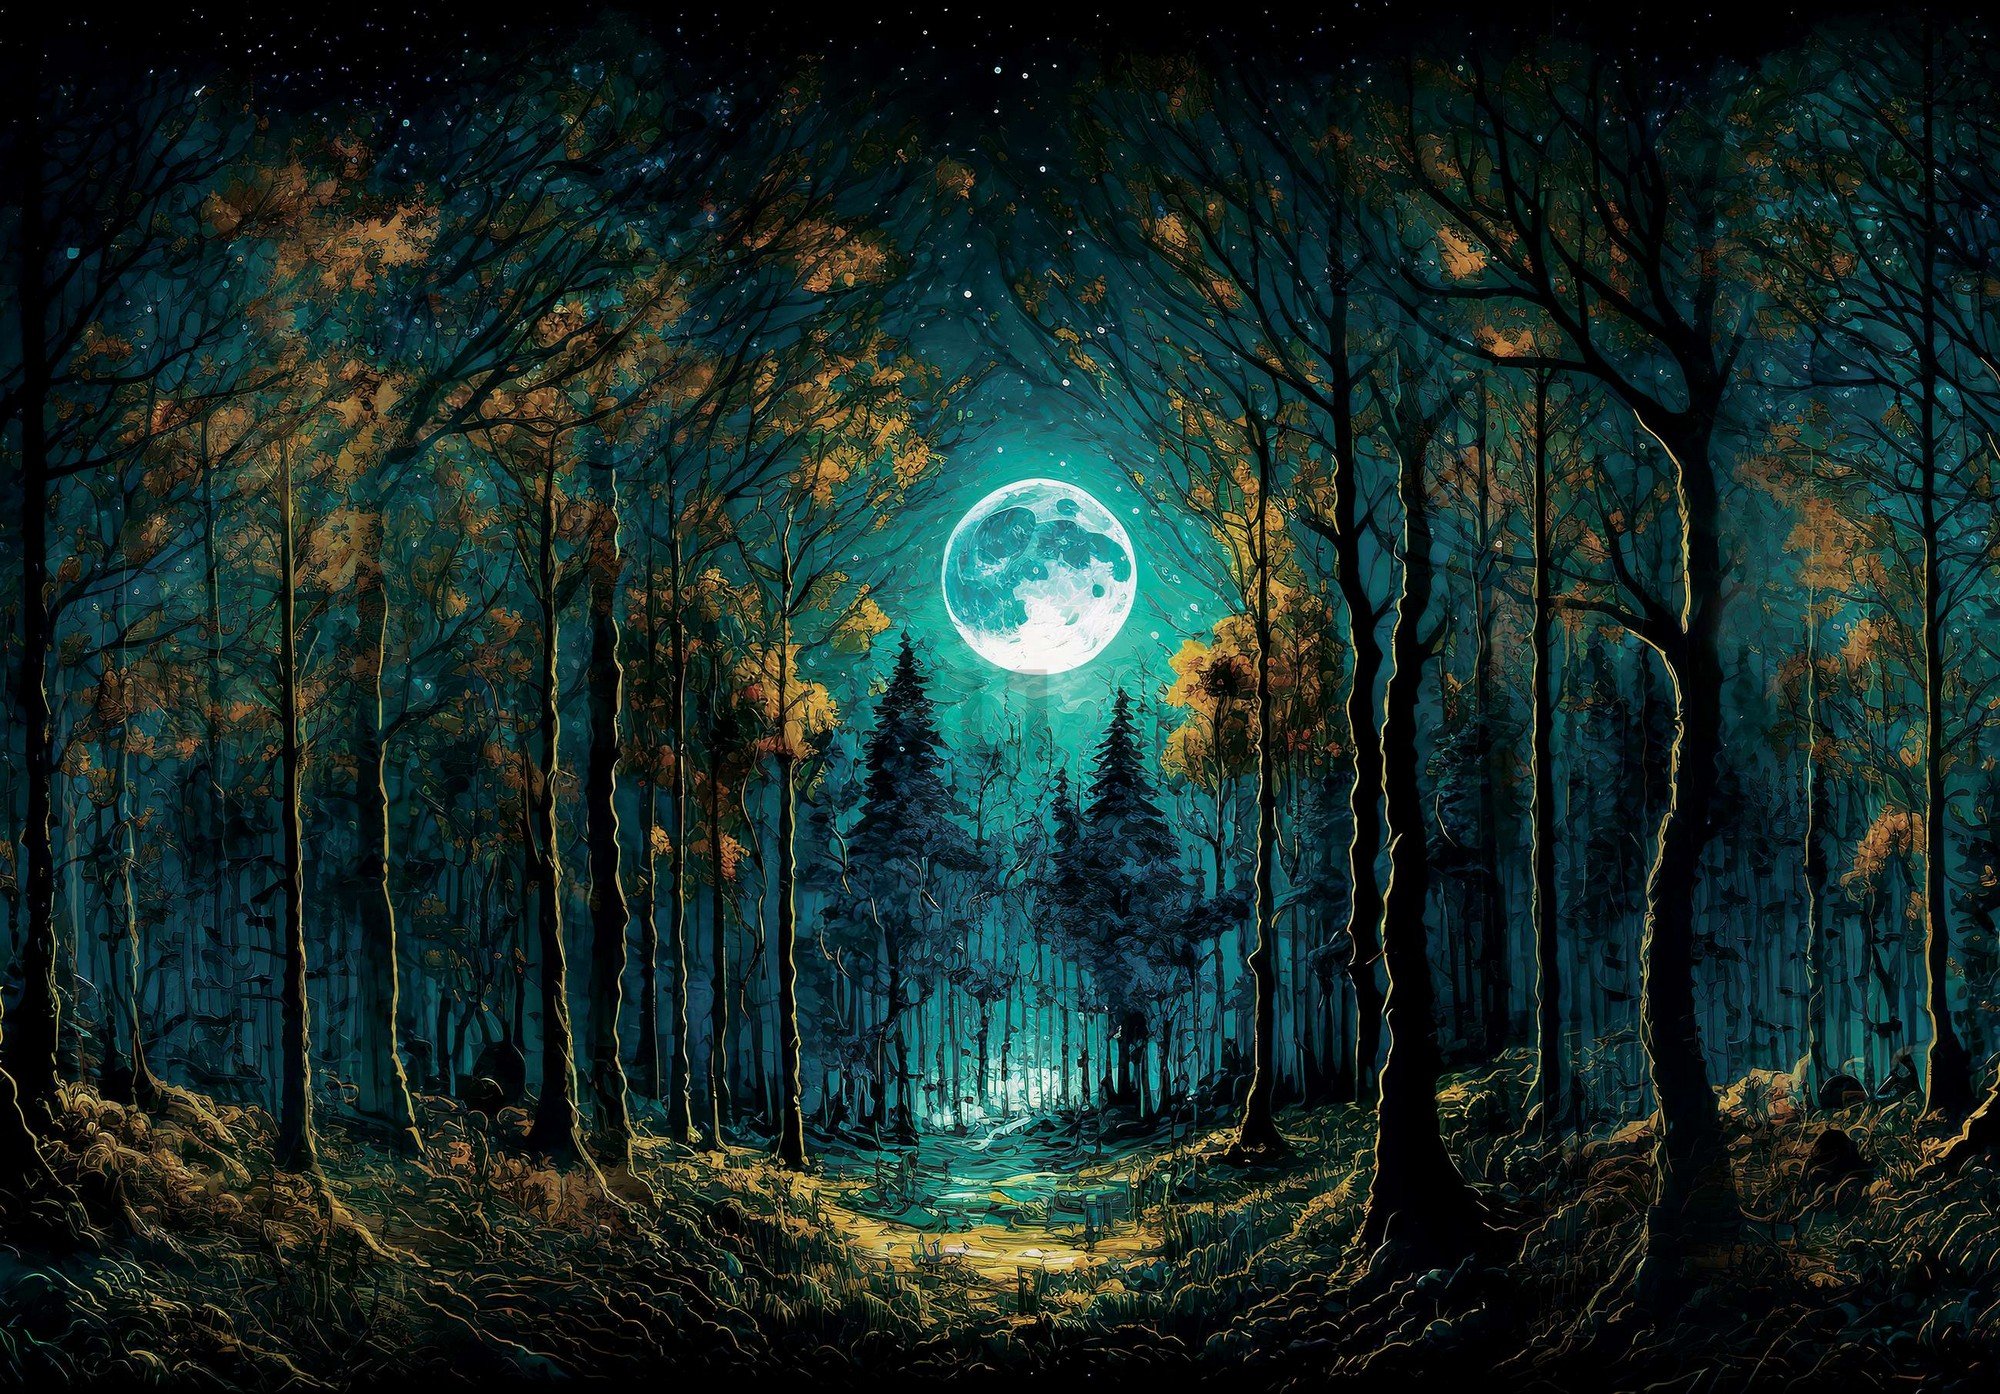 Vlies foto tapeta: Pun mjesec u šumi - 416x254 cm